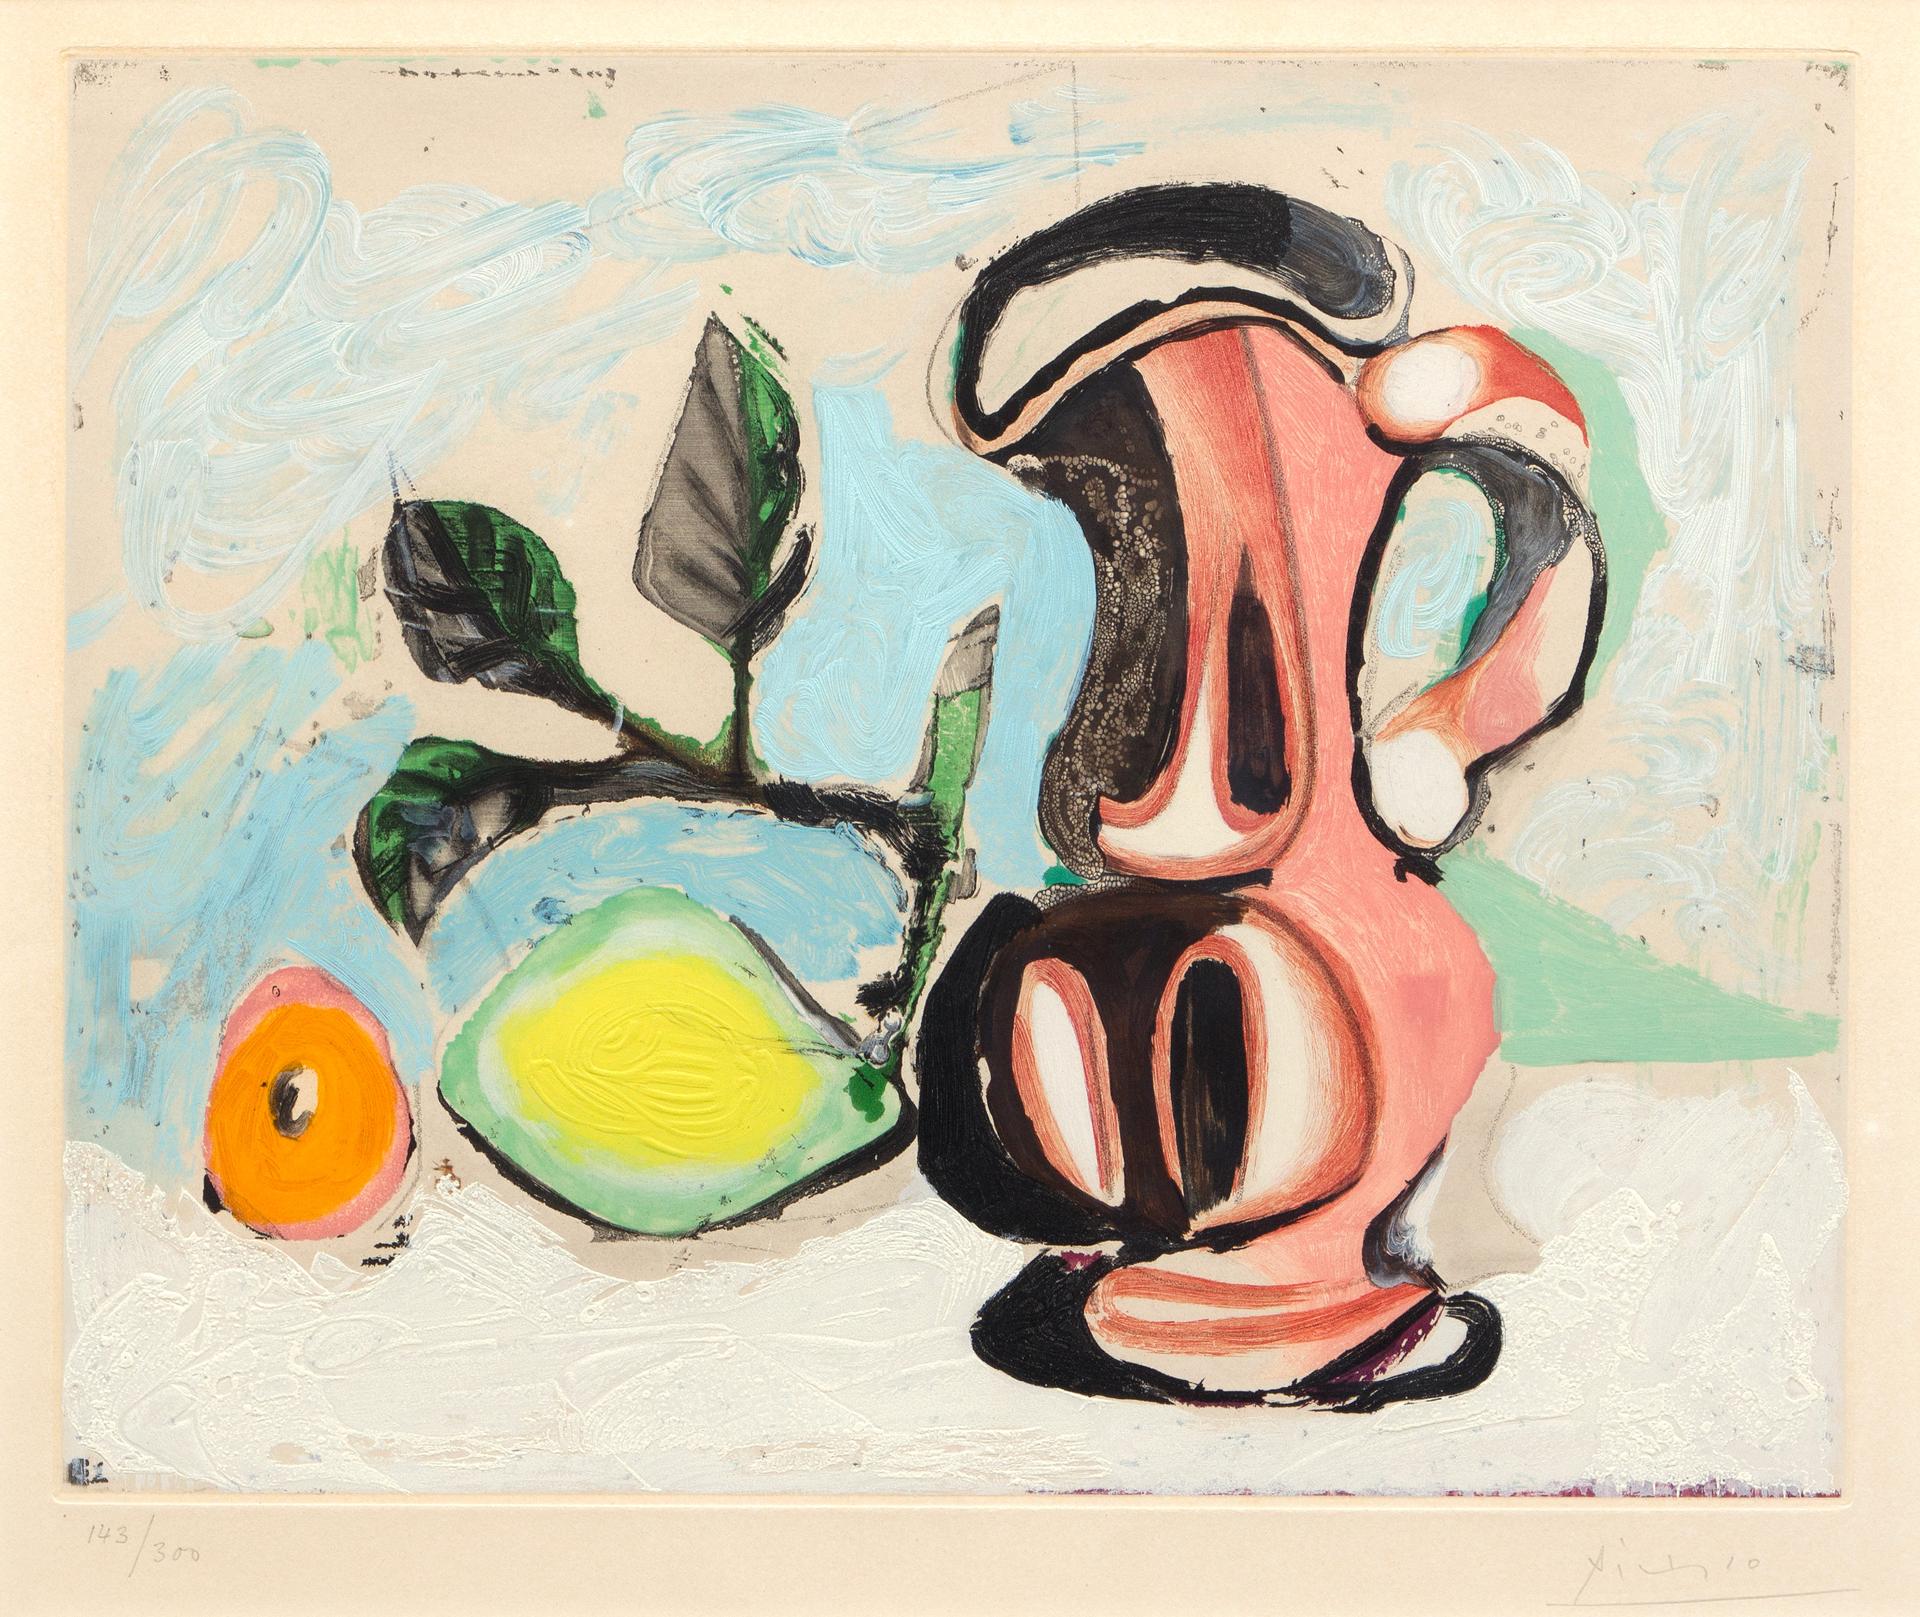 Pablo Ruiz Picasso (1881-1973) - Nature morte au citron et un pichet rouge, c. 1955